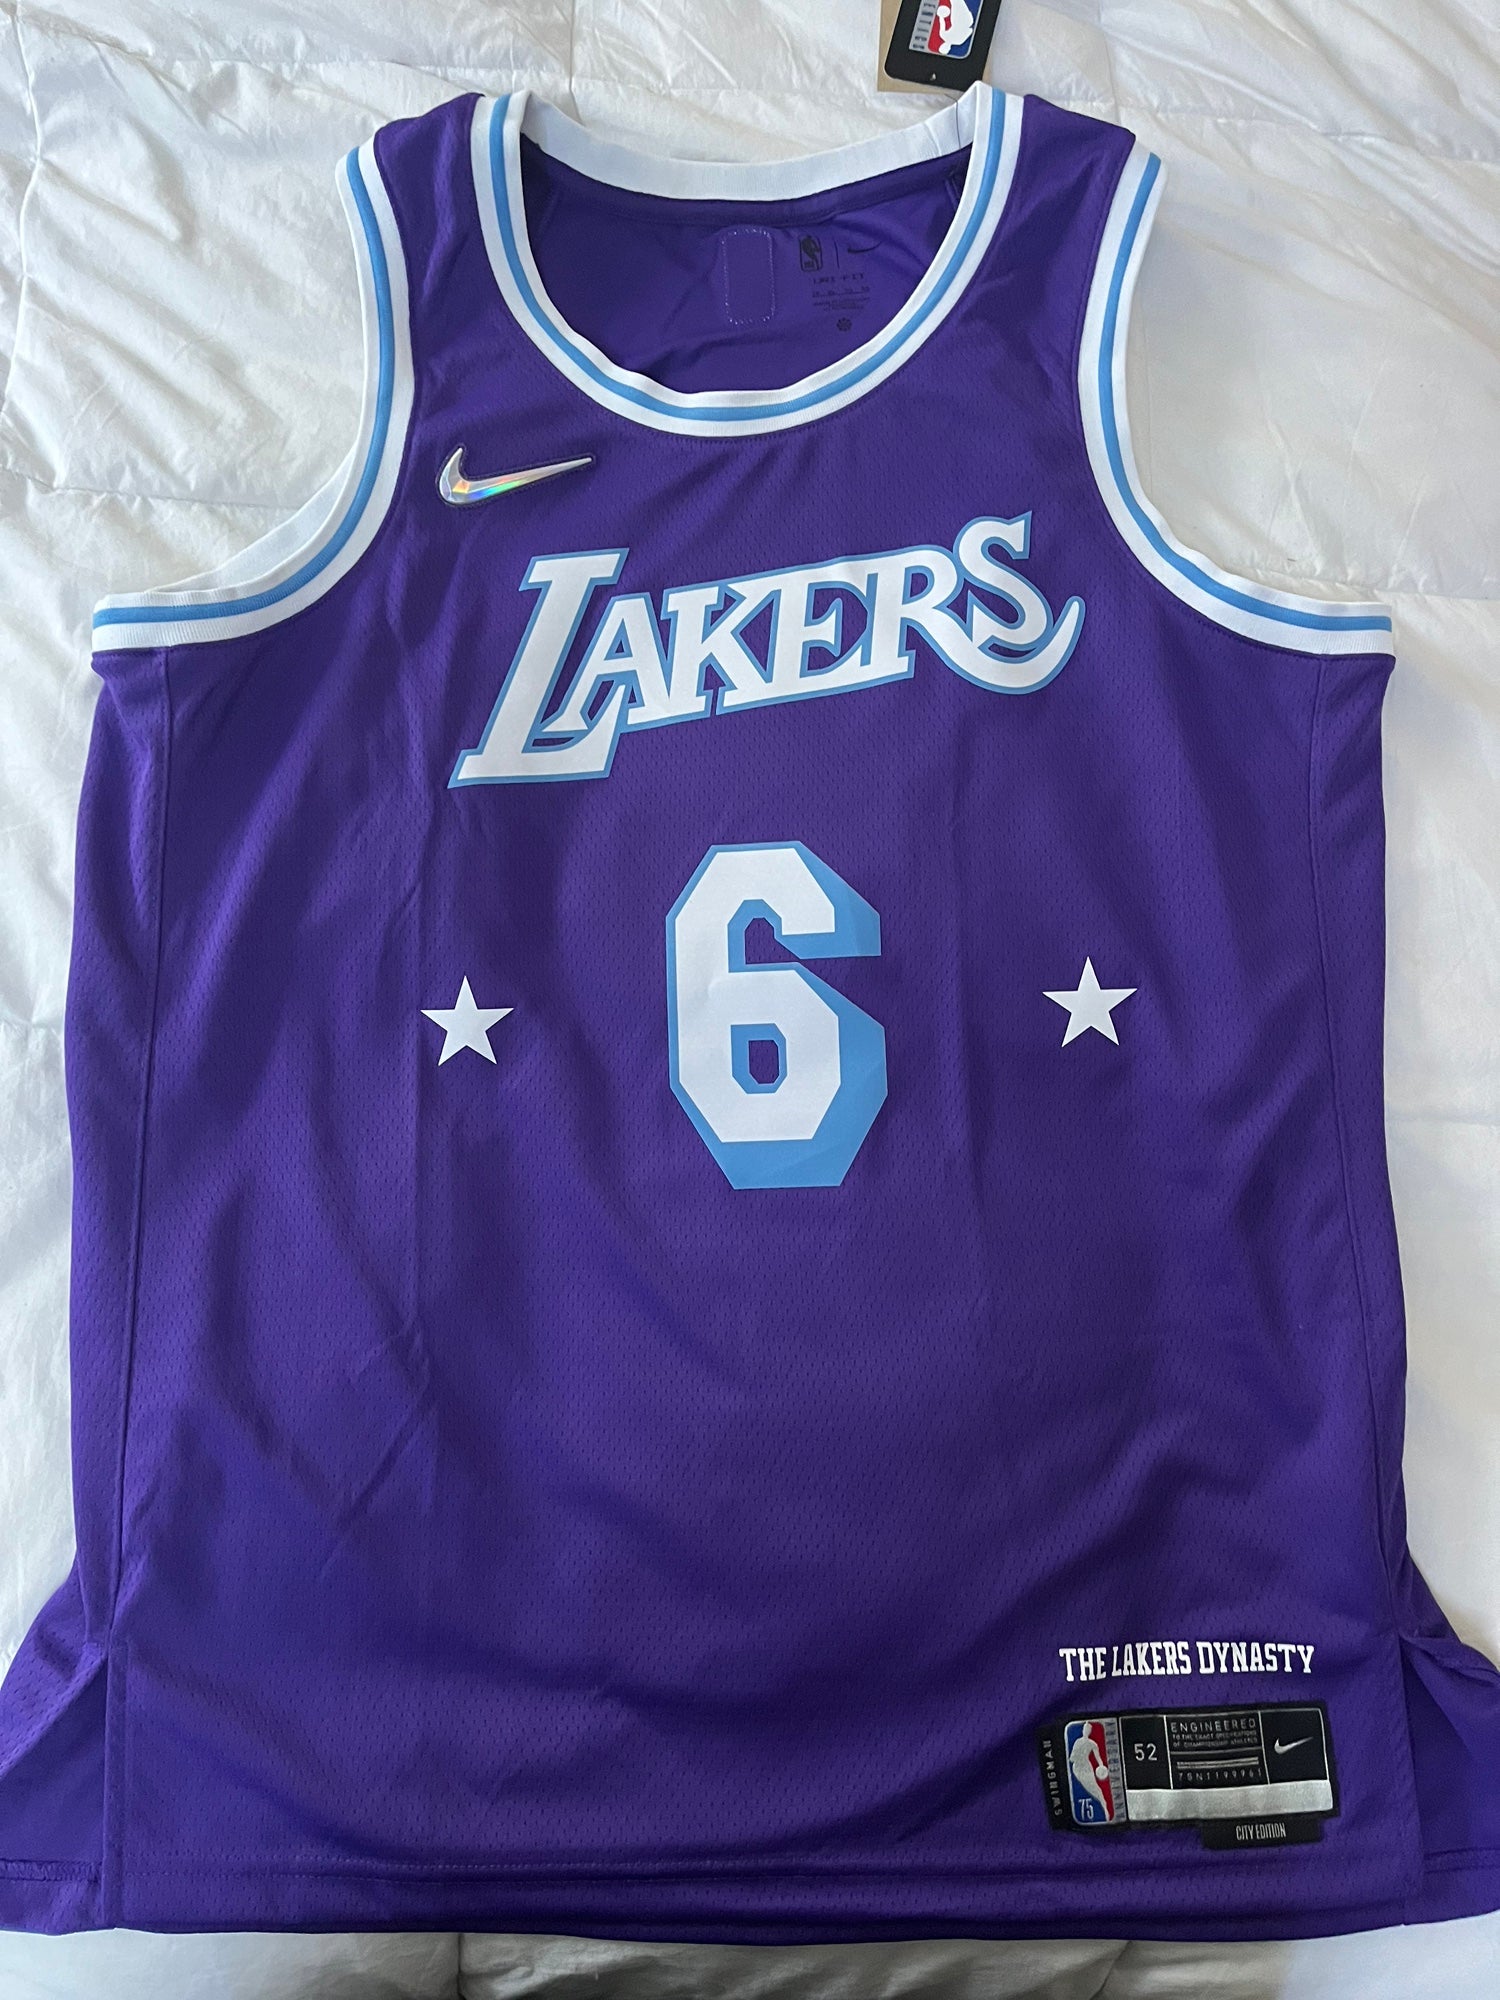 Genuine NIKE Nike James JAMES Lakers Cavaliers retro city version